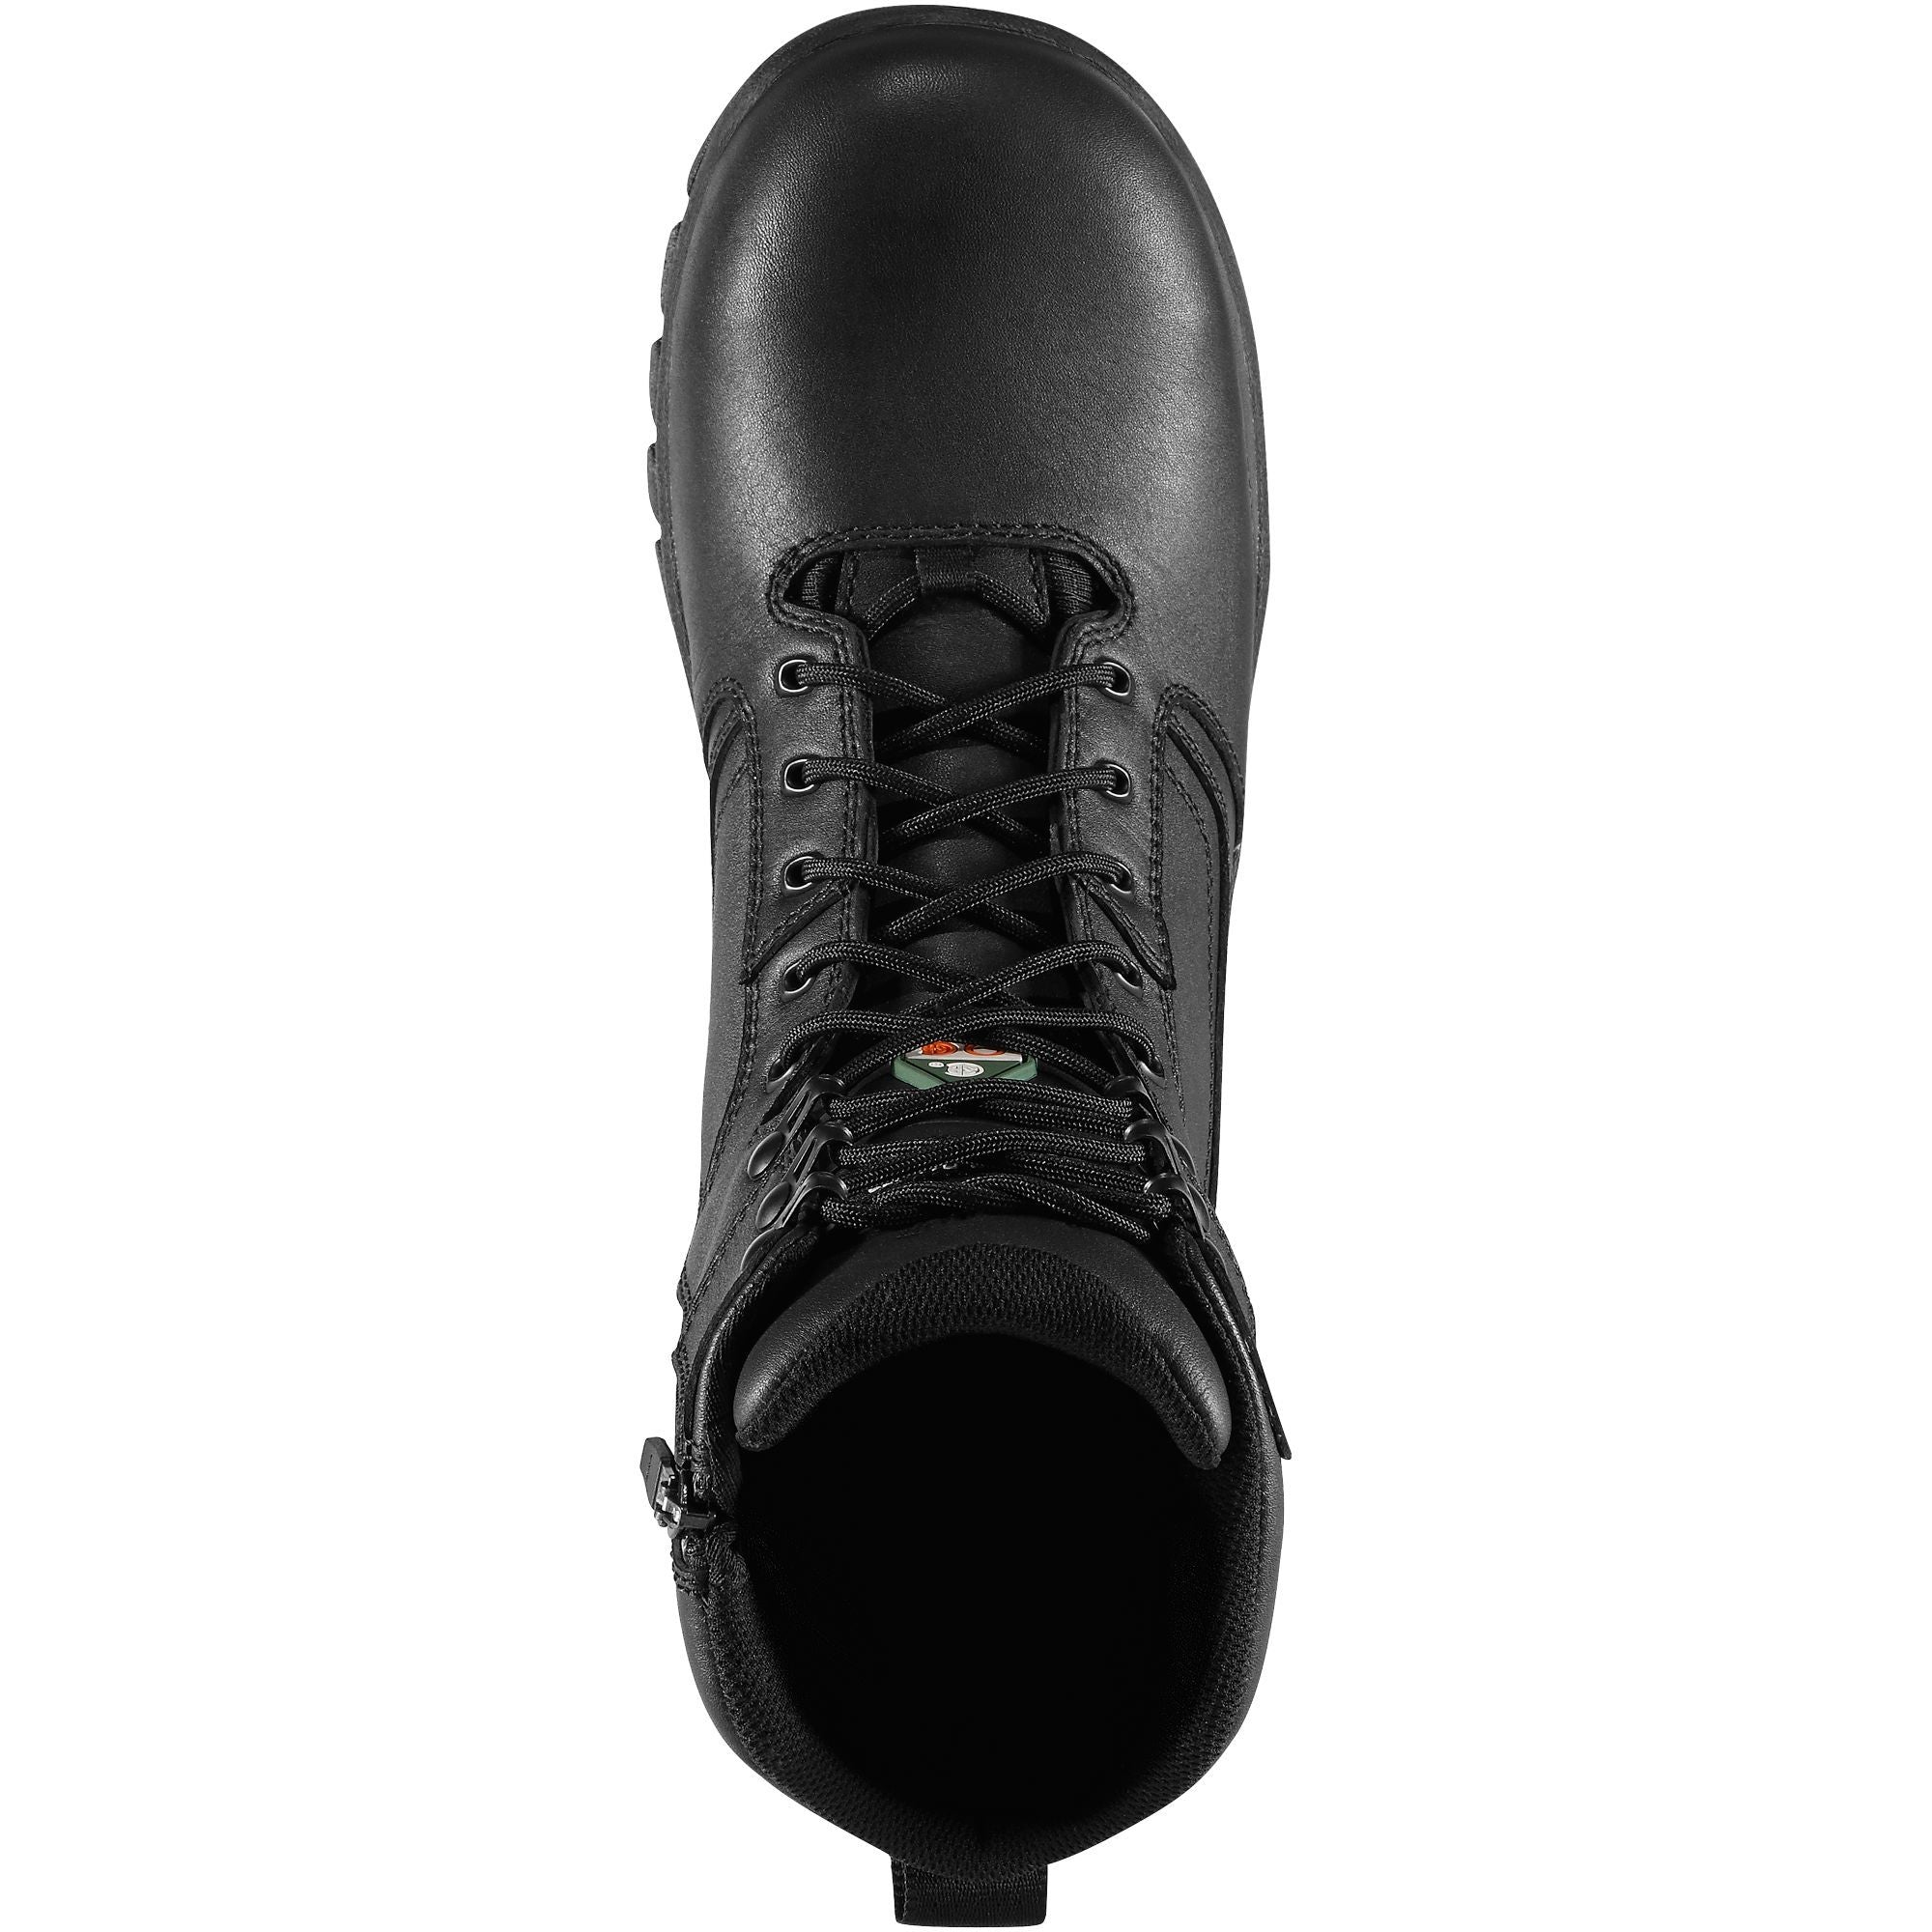 Danner Men's Lookout EMS 8" Side Zip Comp Toe WP Duty Boot Black 23826  - Overlook Boots